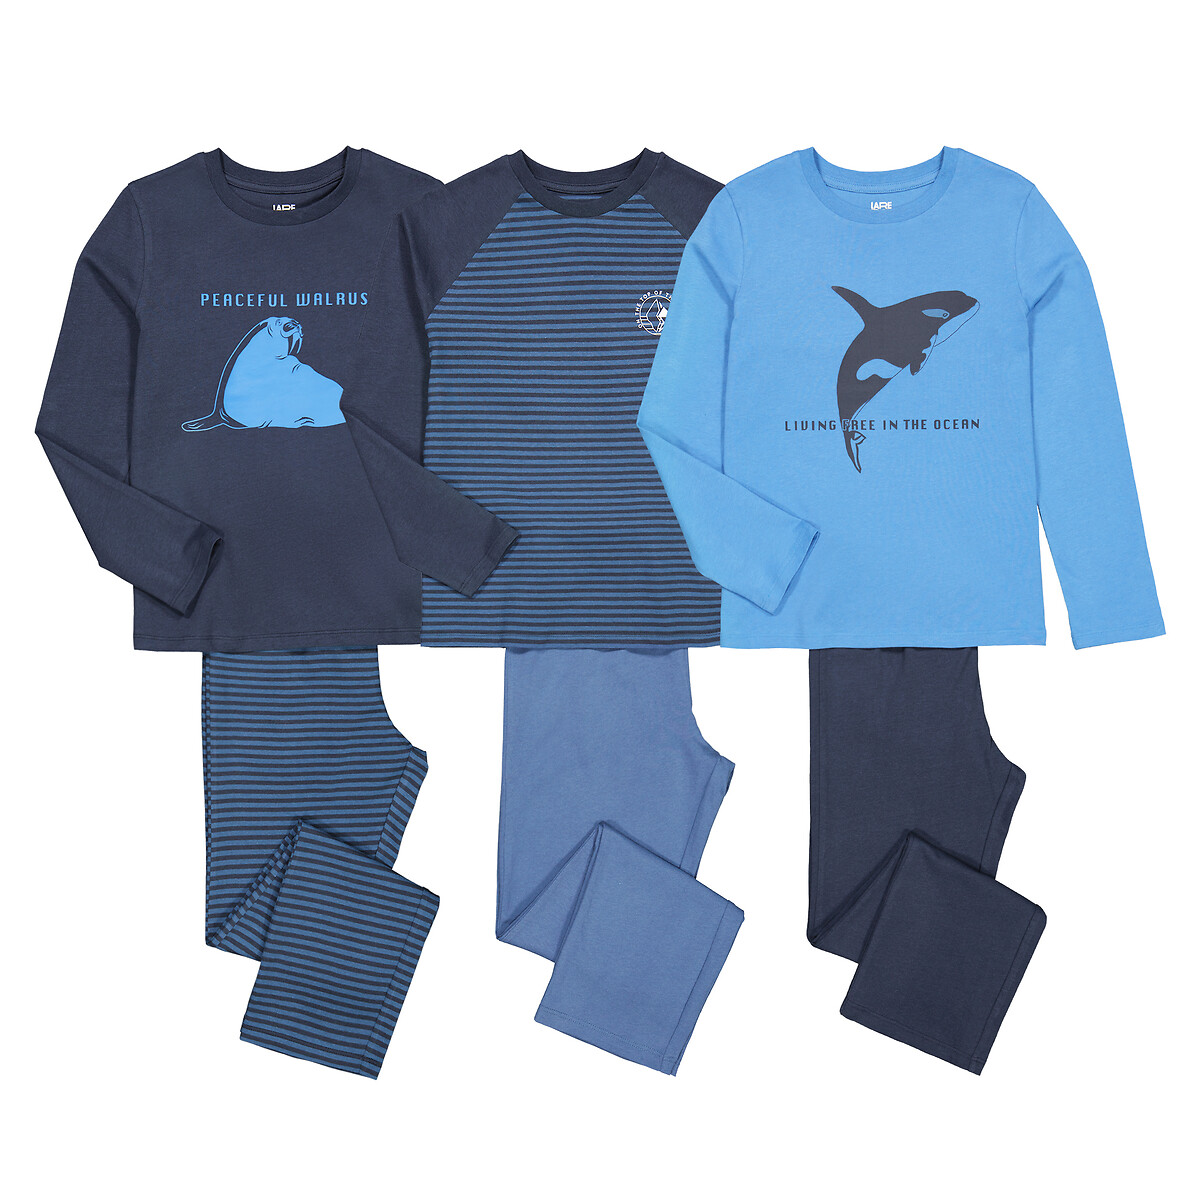 Комплект из трех пижам с принтами косатка морж и в полоску 5 лет - 108 см синий комплект из двух футболок в полоску из хлопка 5 лет 108 см синий